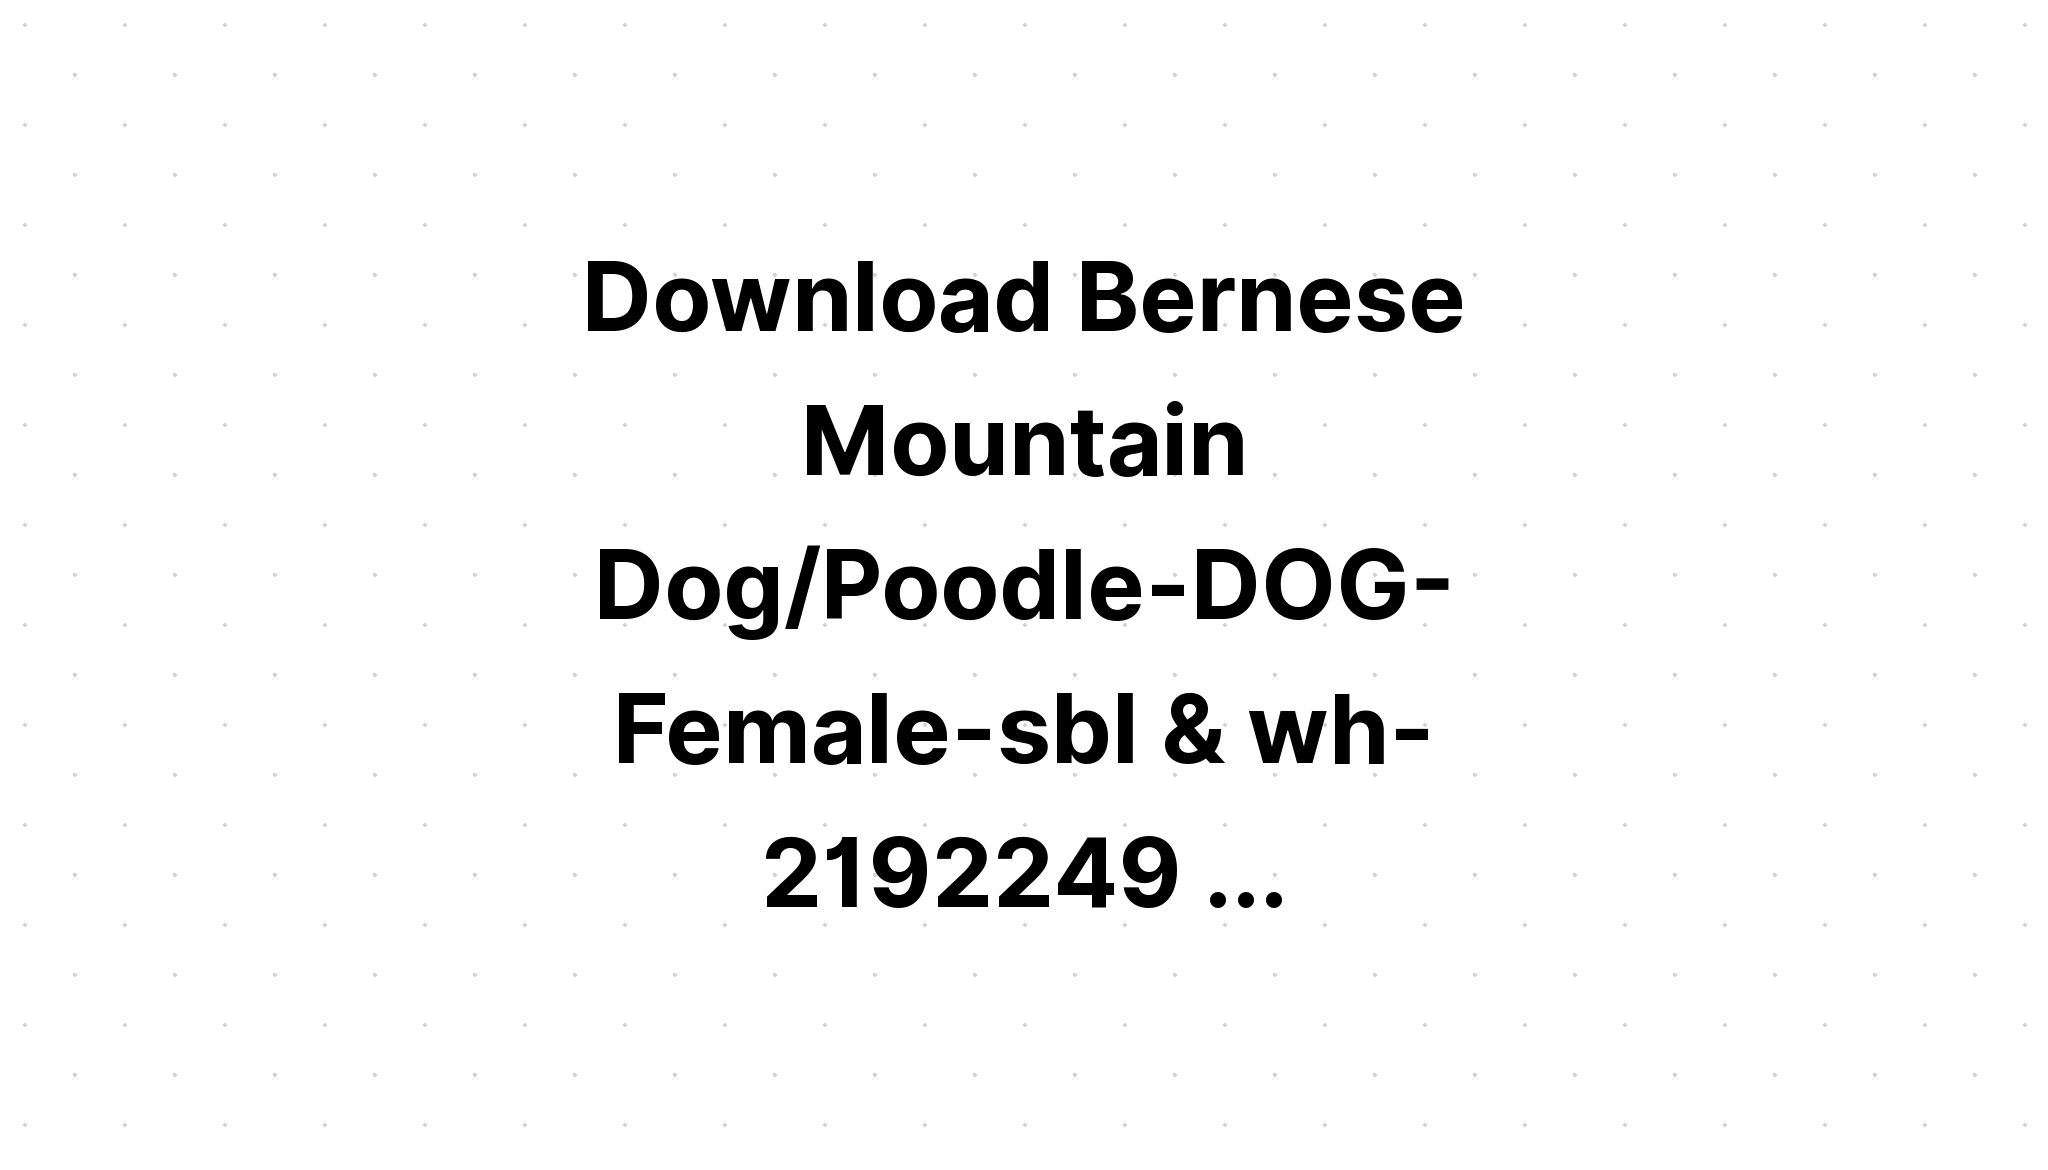 Download Bernese Mountain Dog Mandala SVG File